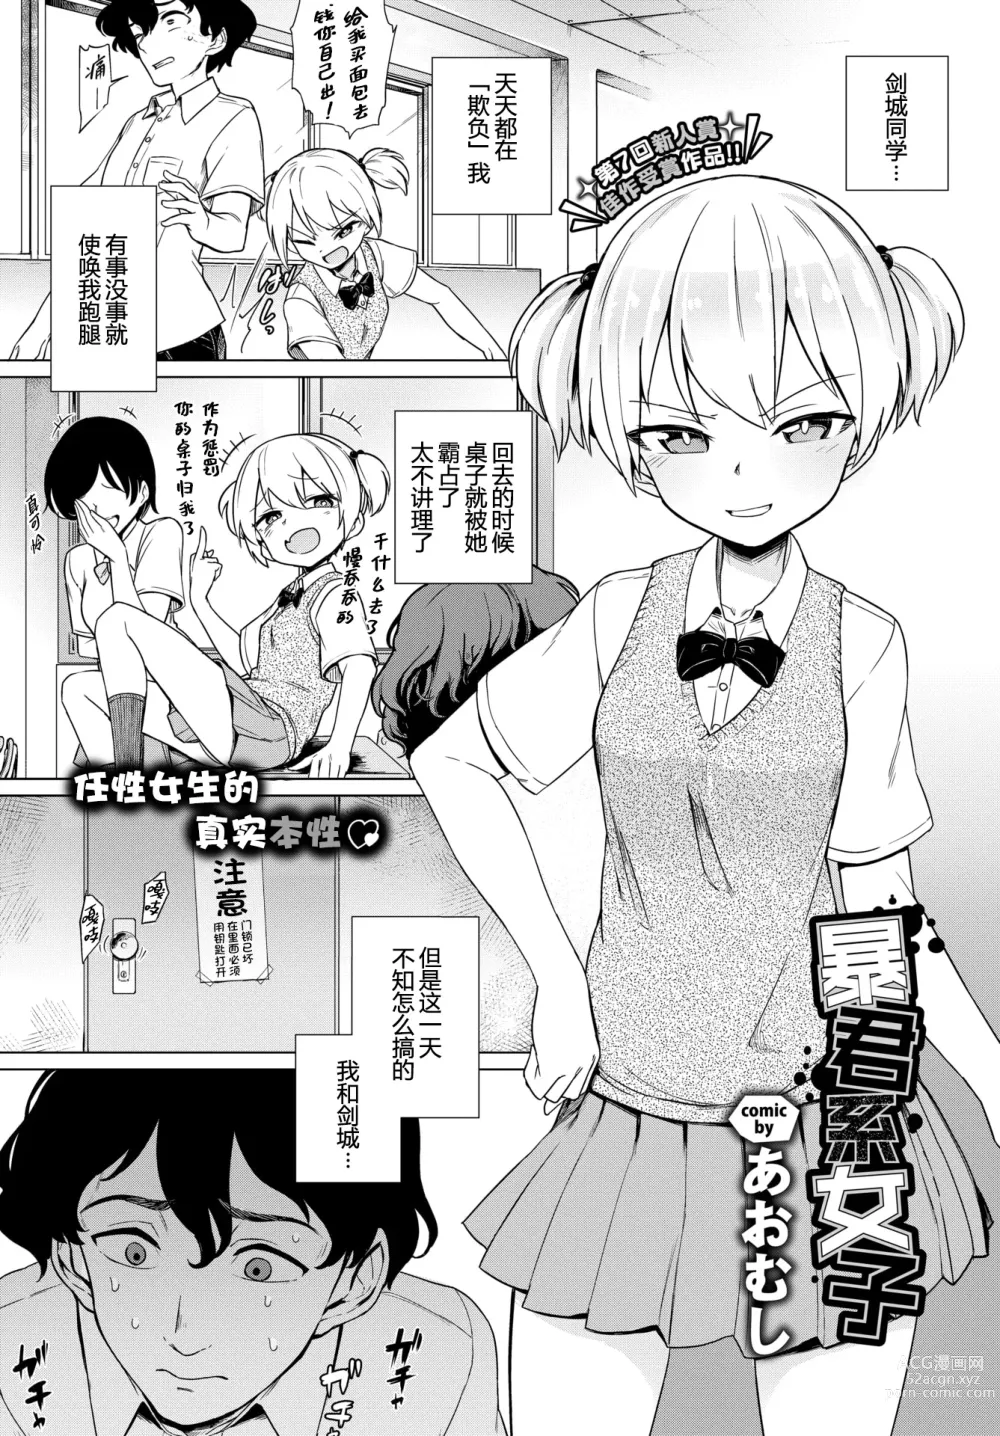 Page 1 of manga Boukun-kei Joshi